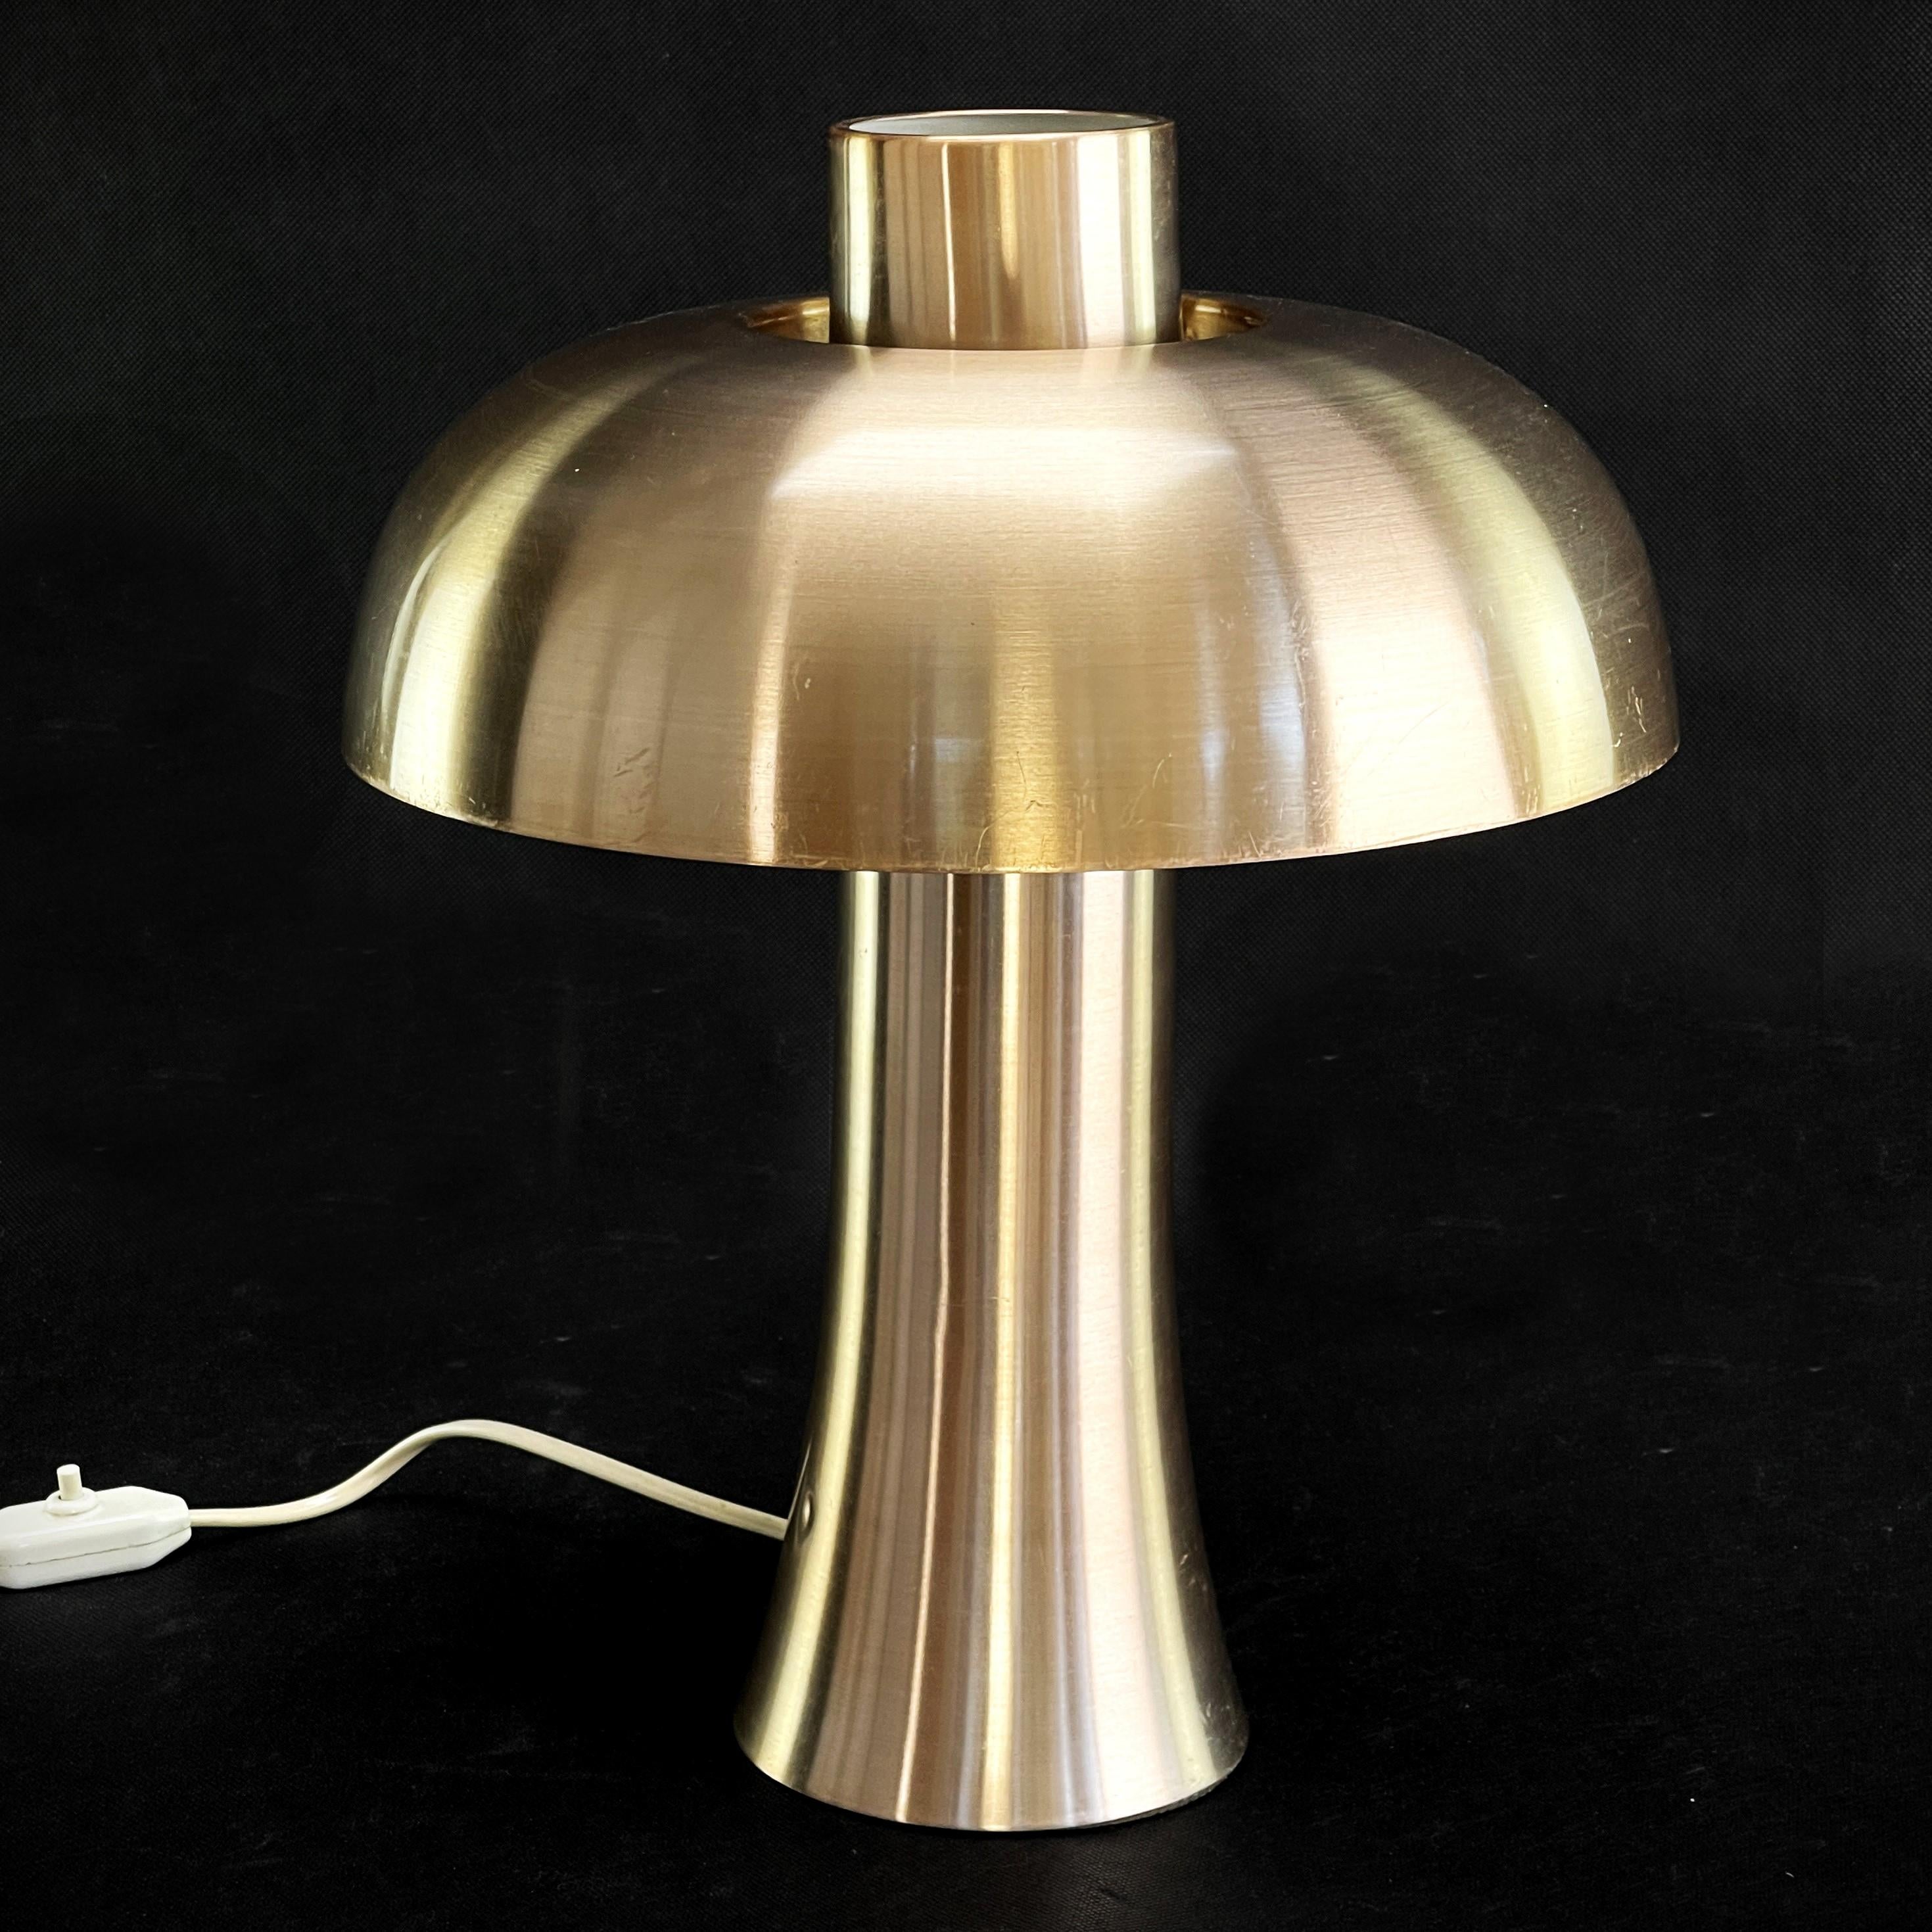 Lampe à poser Doria en aluminium - années 1970

La lampe à poser Doria Mushroom des années 1970 est un véritable classique du design rétro. Cette lampe de table séduit par sa surface anodisée de couleur cuivre en aluminium brossé, qui lui confère un